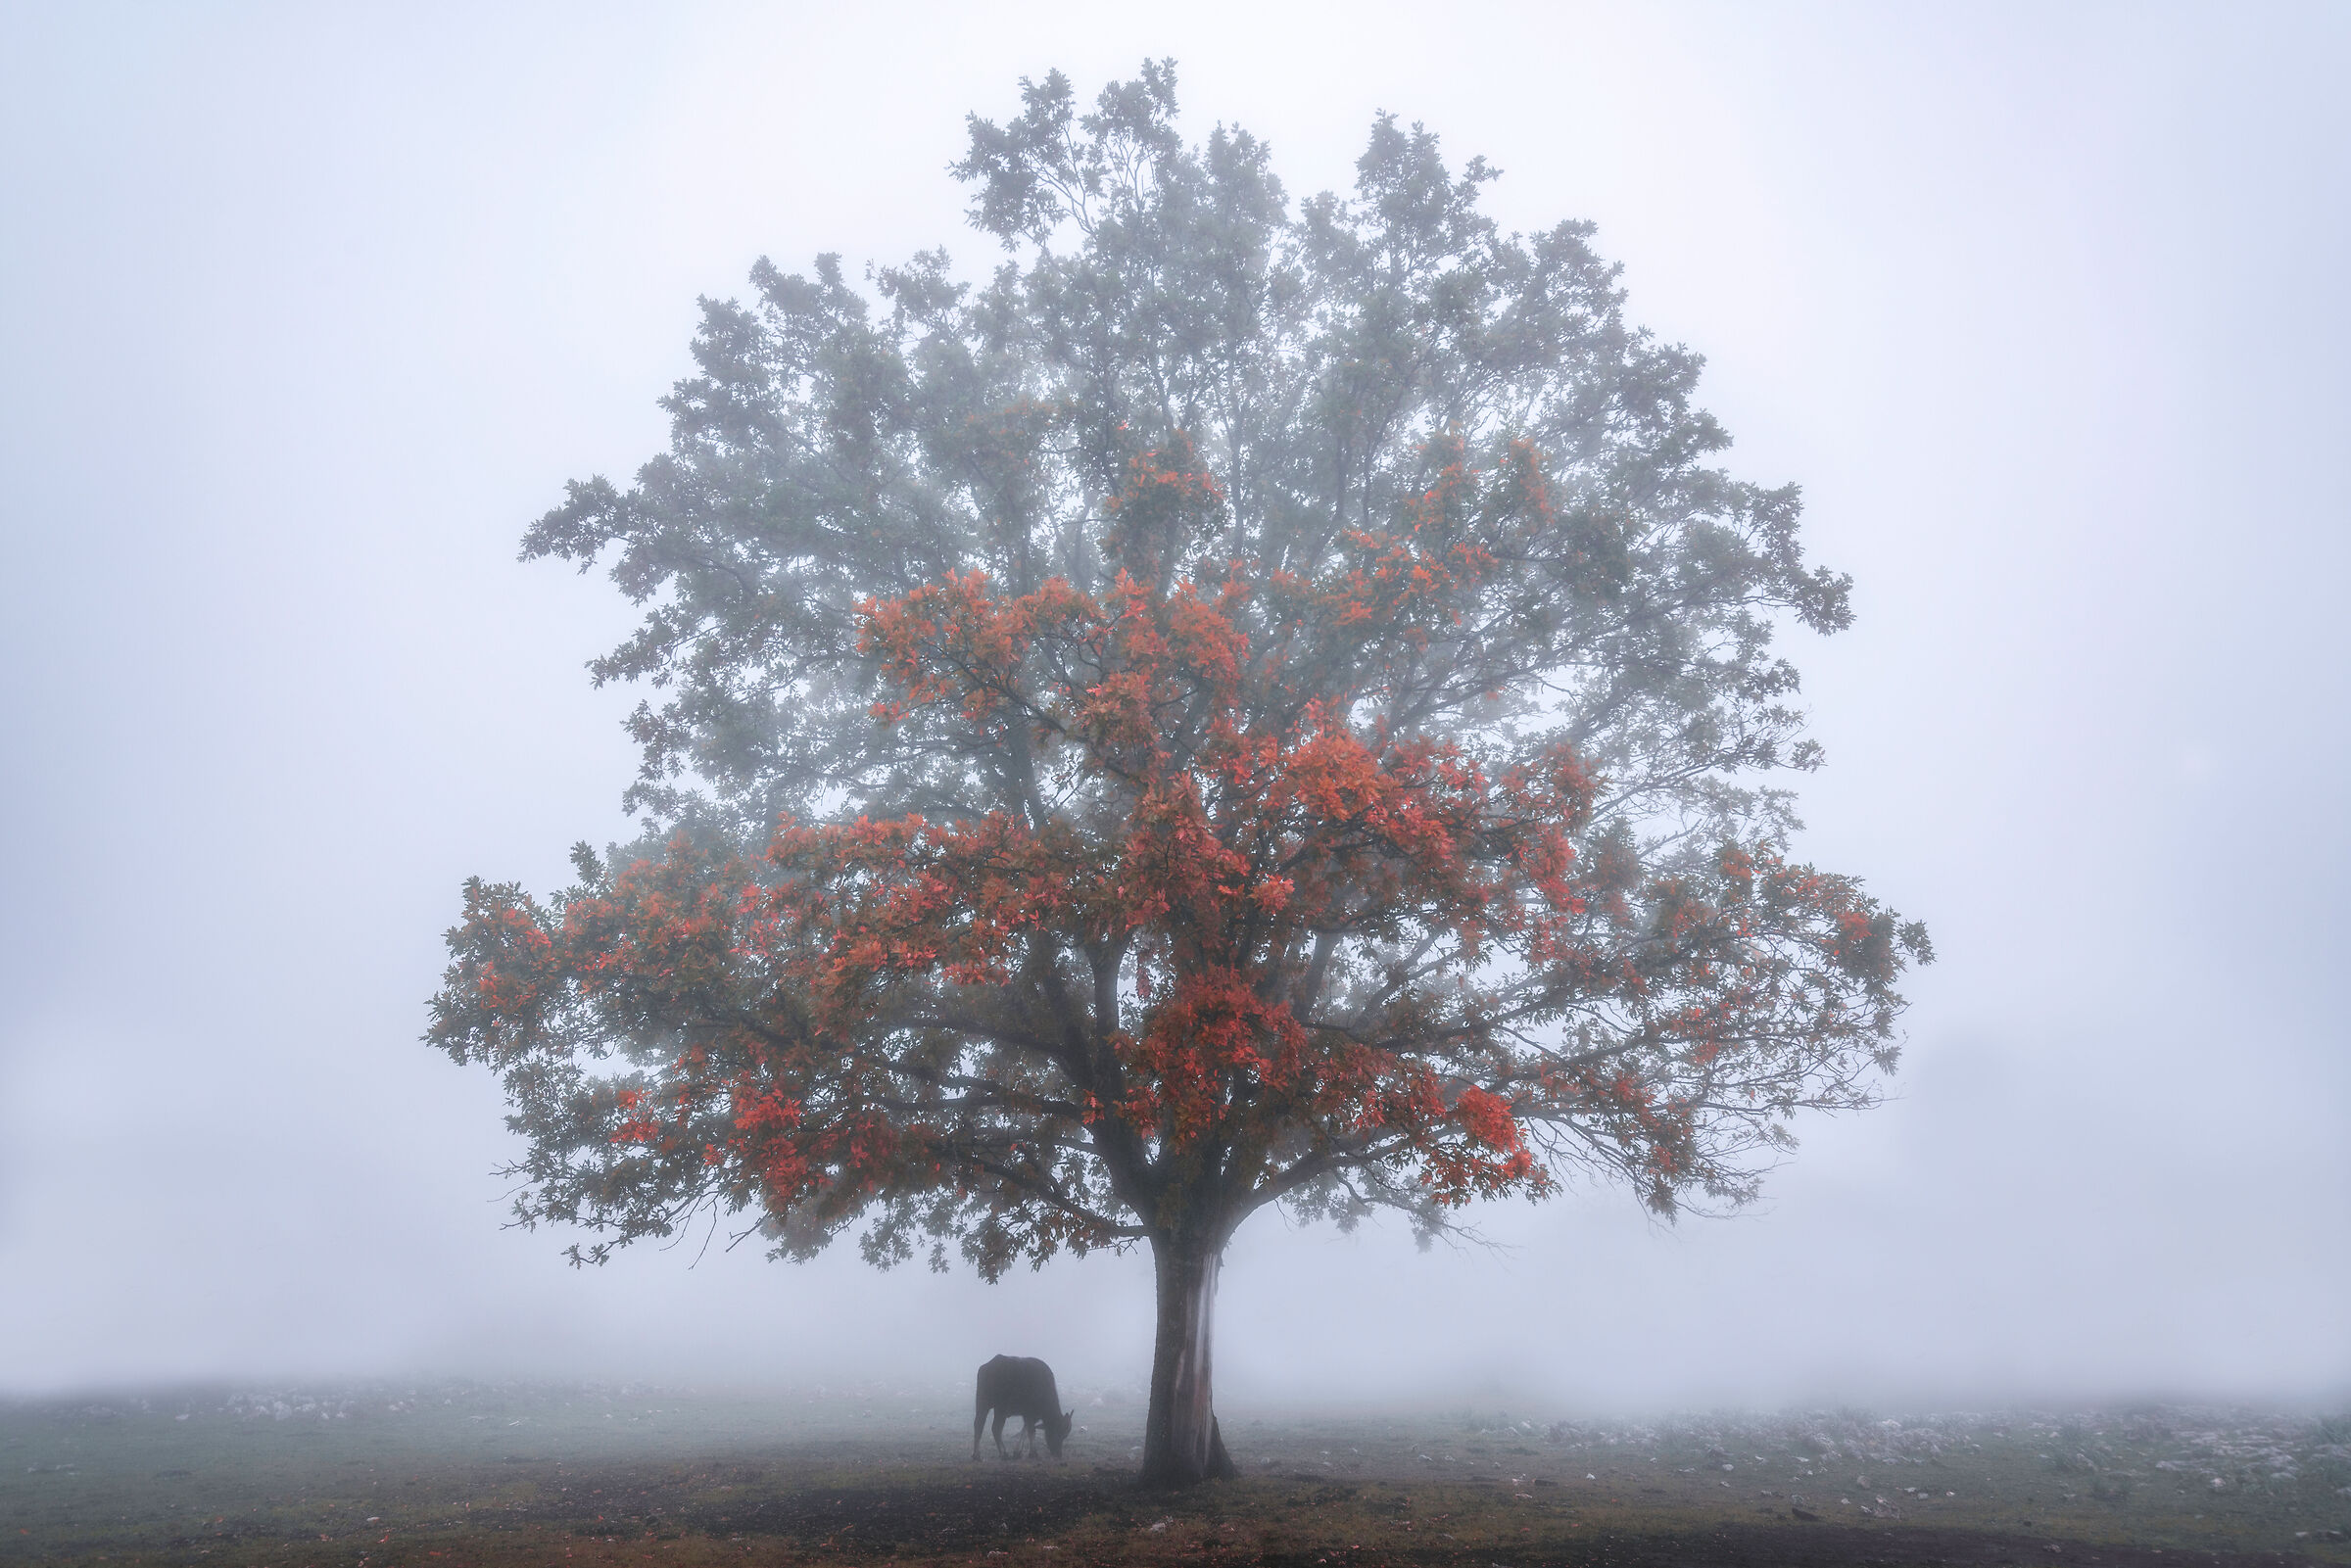 Fog and autumn...